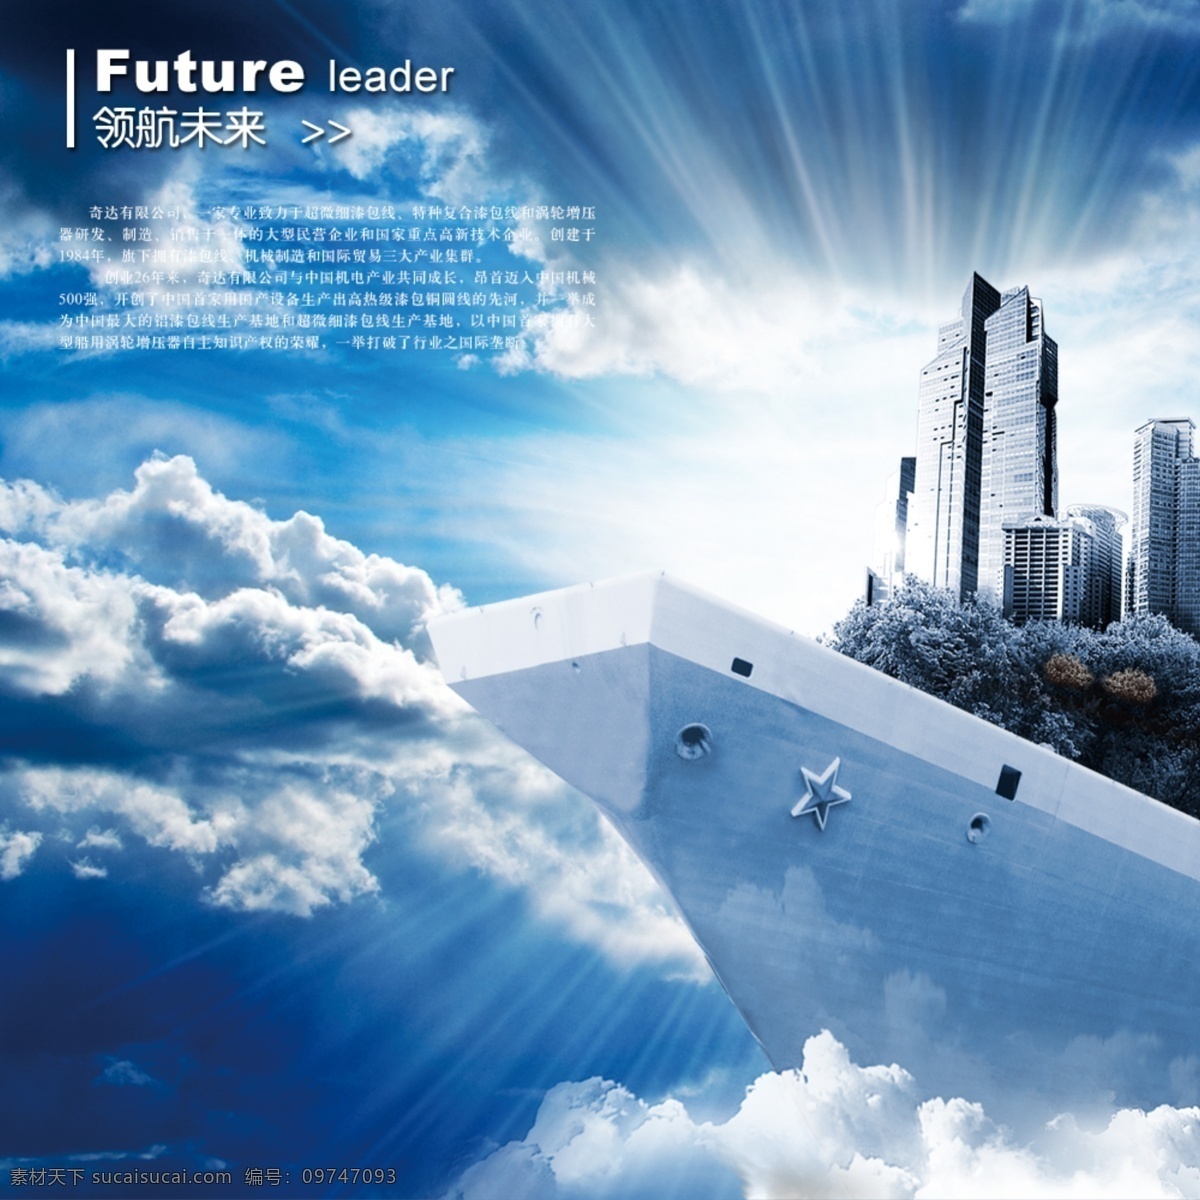 中国 航母 起航 合成 海报 模板 蓝色 天空 云彩 psd源文件